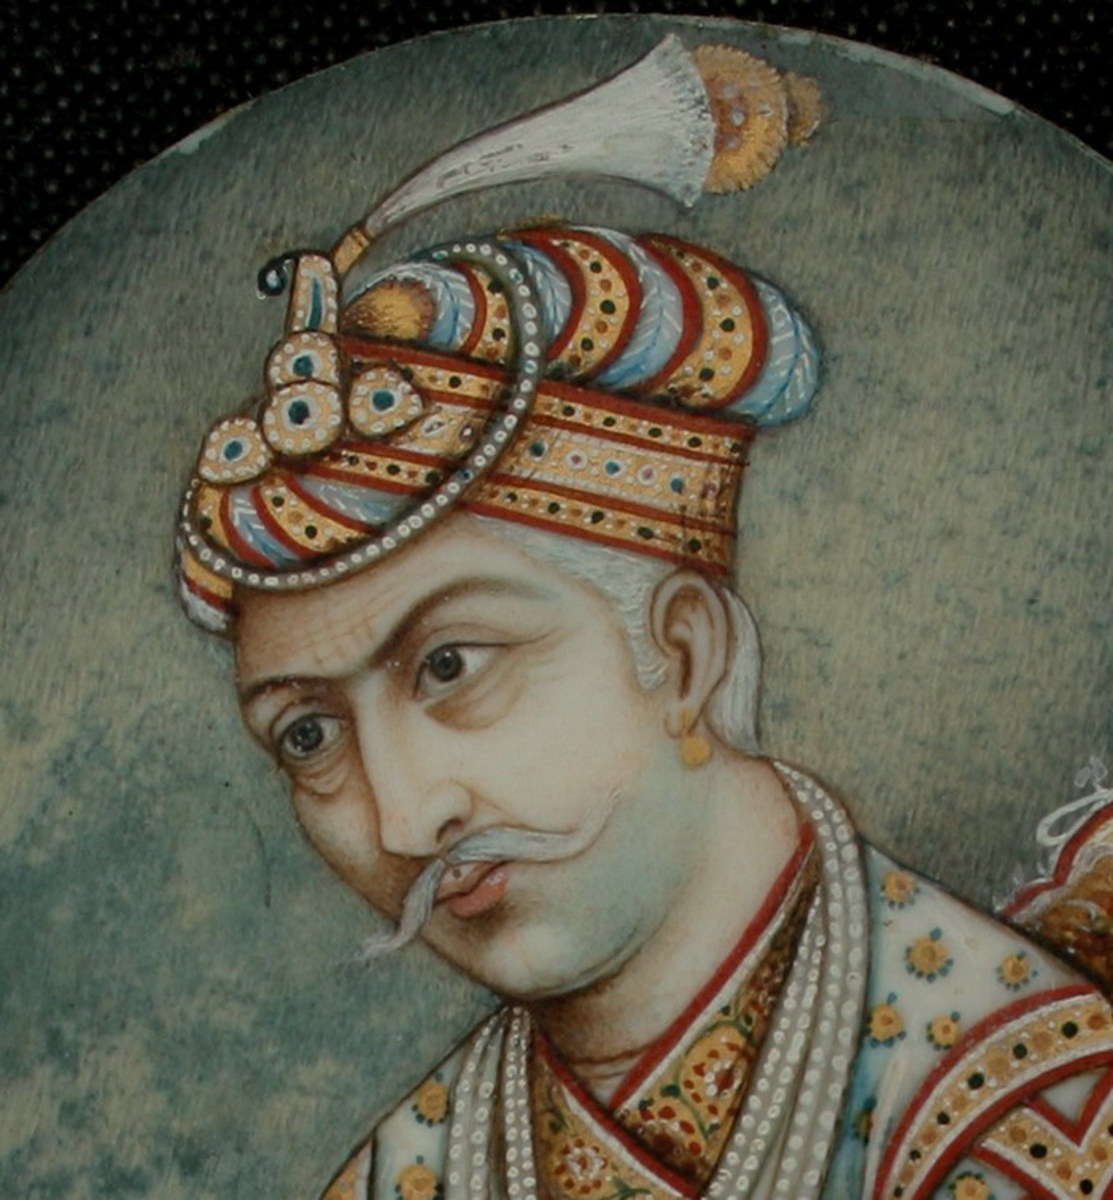 The Mughal Emperor Akbar